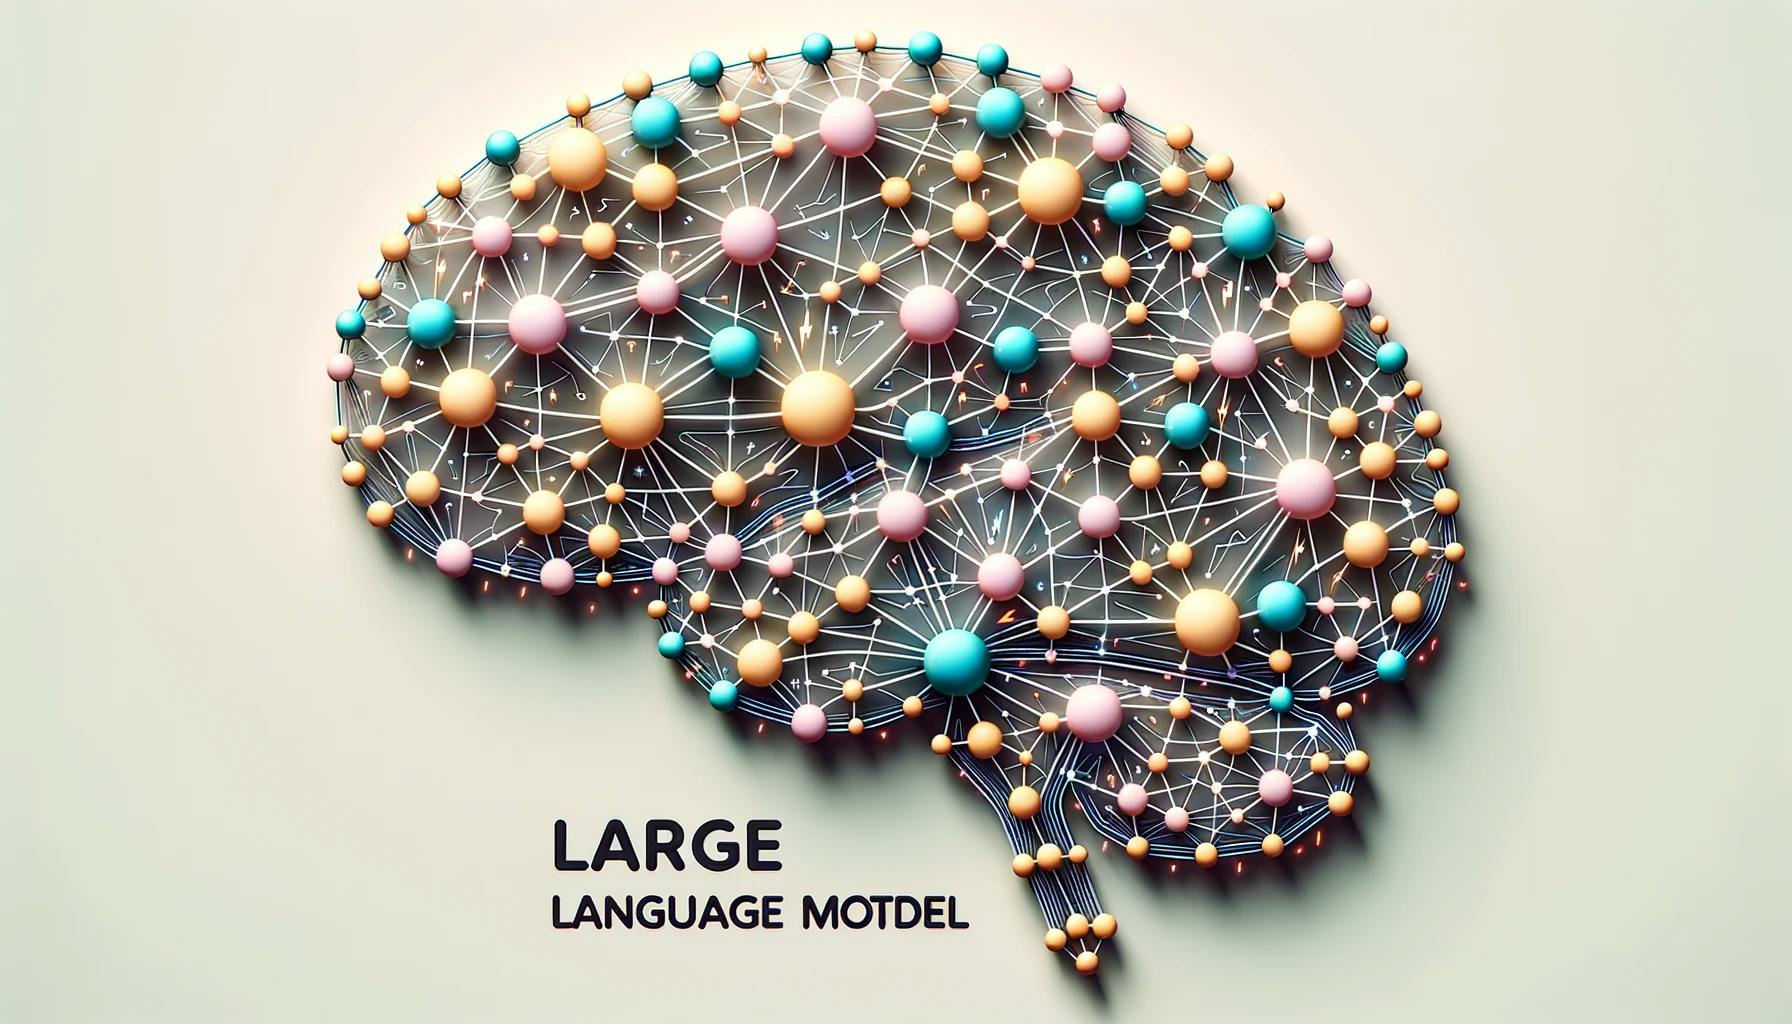 Tauchen Sie ein in die faszinierende Welt der Uncensored Large Language Models (LLM). Von ihrer Vielseitigkeit bis zu ihrer technischen Fähigkeit deckt dieser umfassende Leitfaden alles ab. Machen Sie sich bereit, die Zukunft der KI zu erkunden!